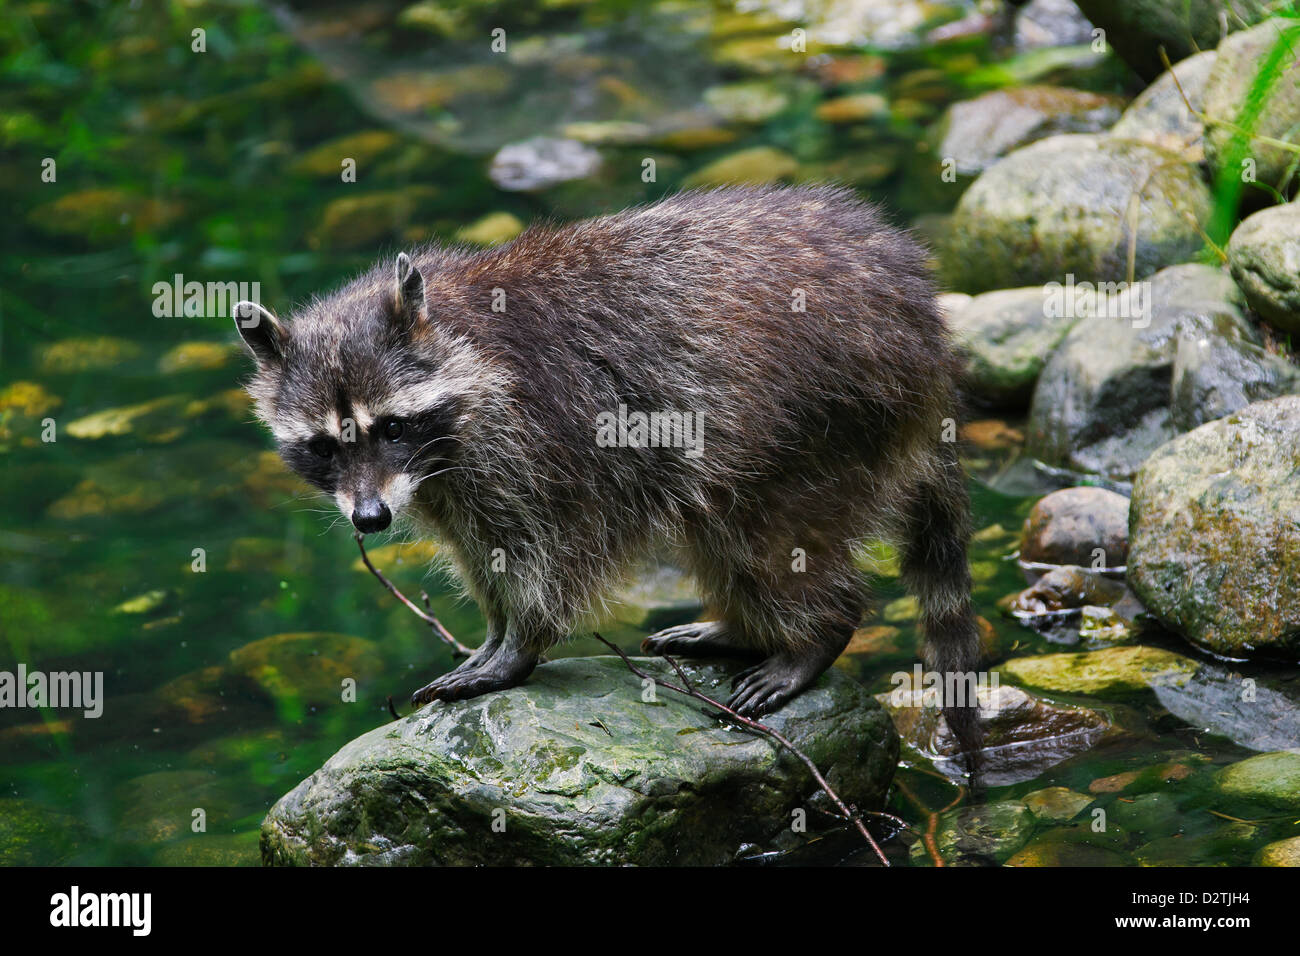 North American mapache (Procyon lotor), nativa de América del Norte, en la ribera del río Foto de stock